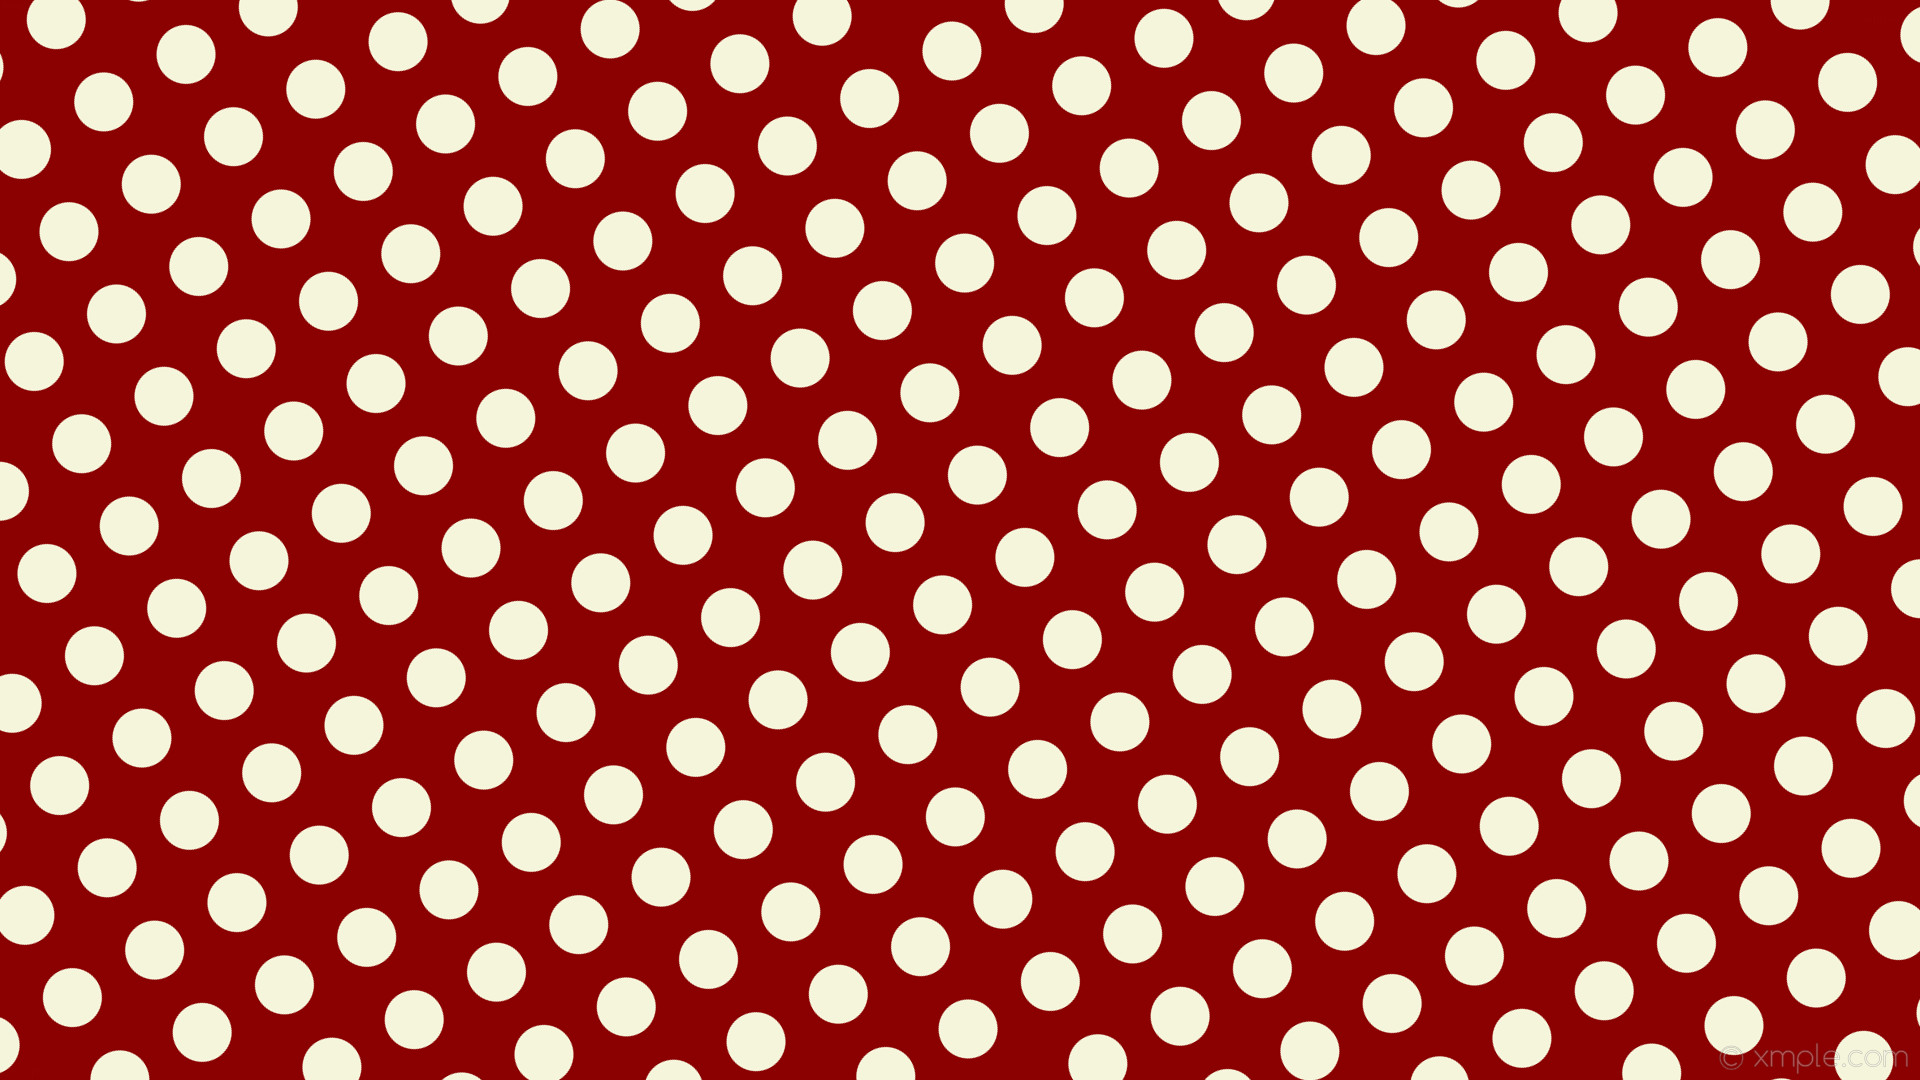 1920x1080 wallpaper dots red polka spots white dark red beige #8b0000 #f5f5dc 300Â°  59px